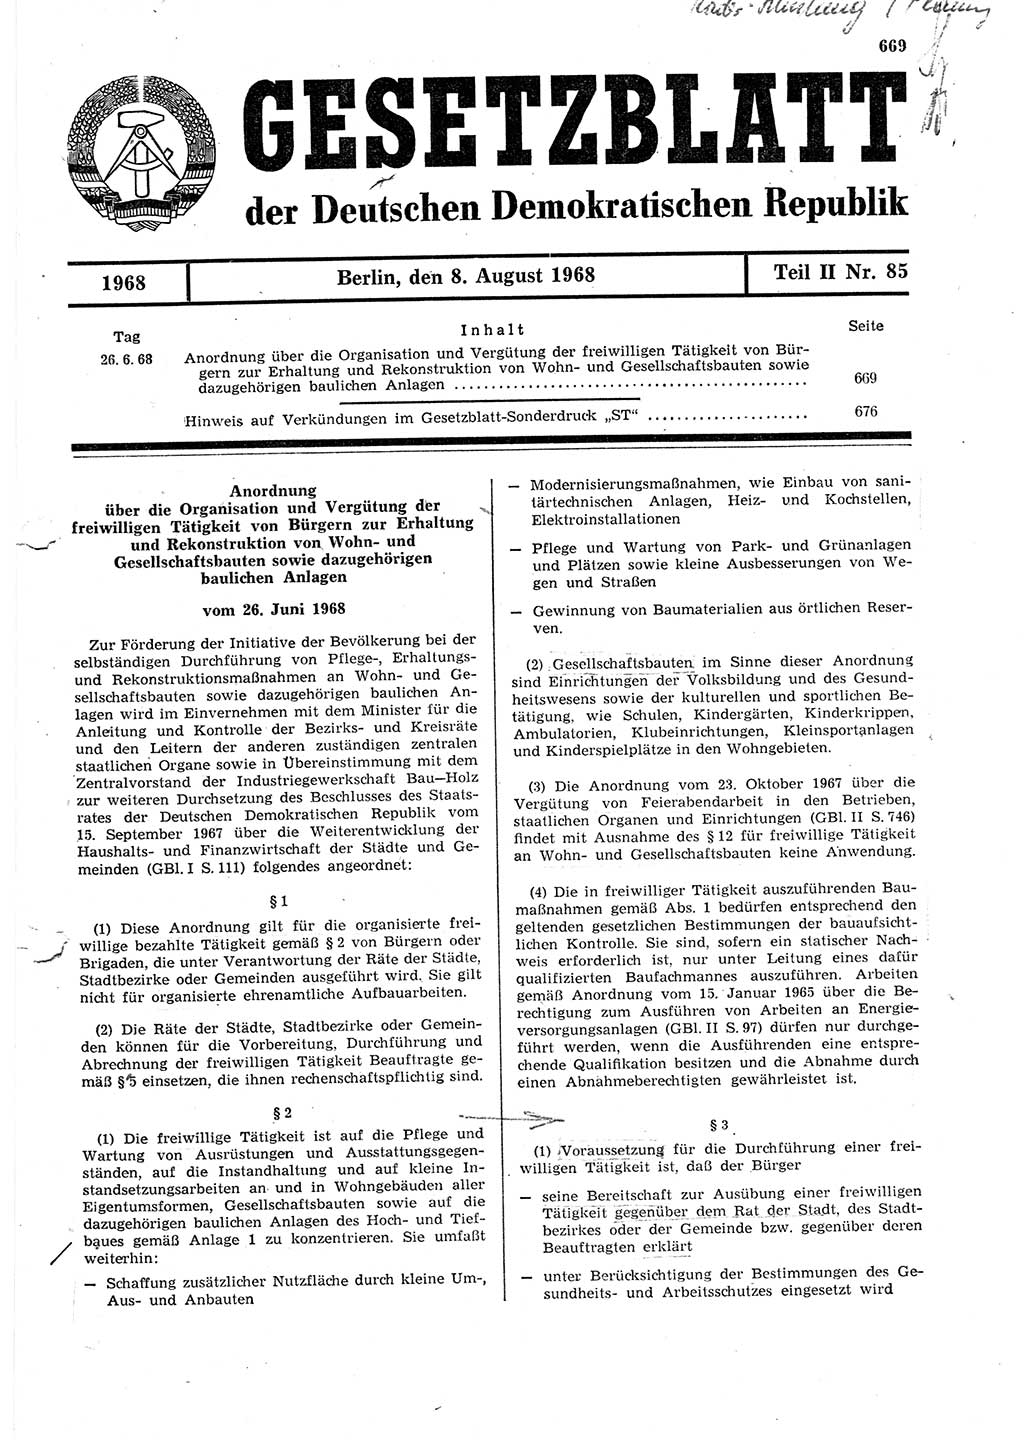 Gesetzblatt (GBl.) der Deutschen Demokratischen Republik (DDR) Teil ⅠⅠ 1968, Seite 669 (GBl. DDR ⅠⅠ 1968, S. 669)